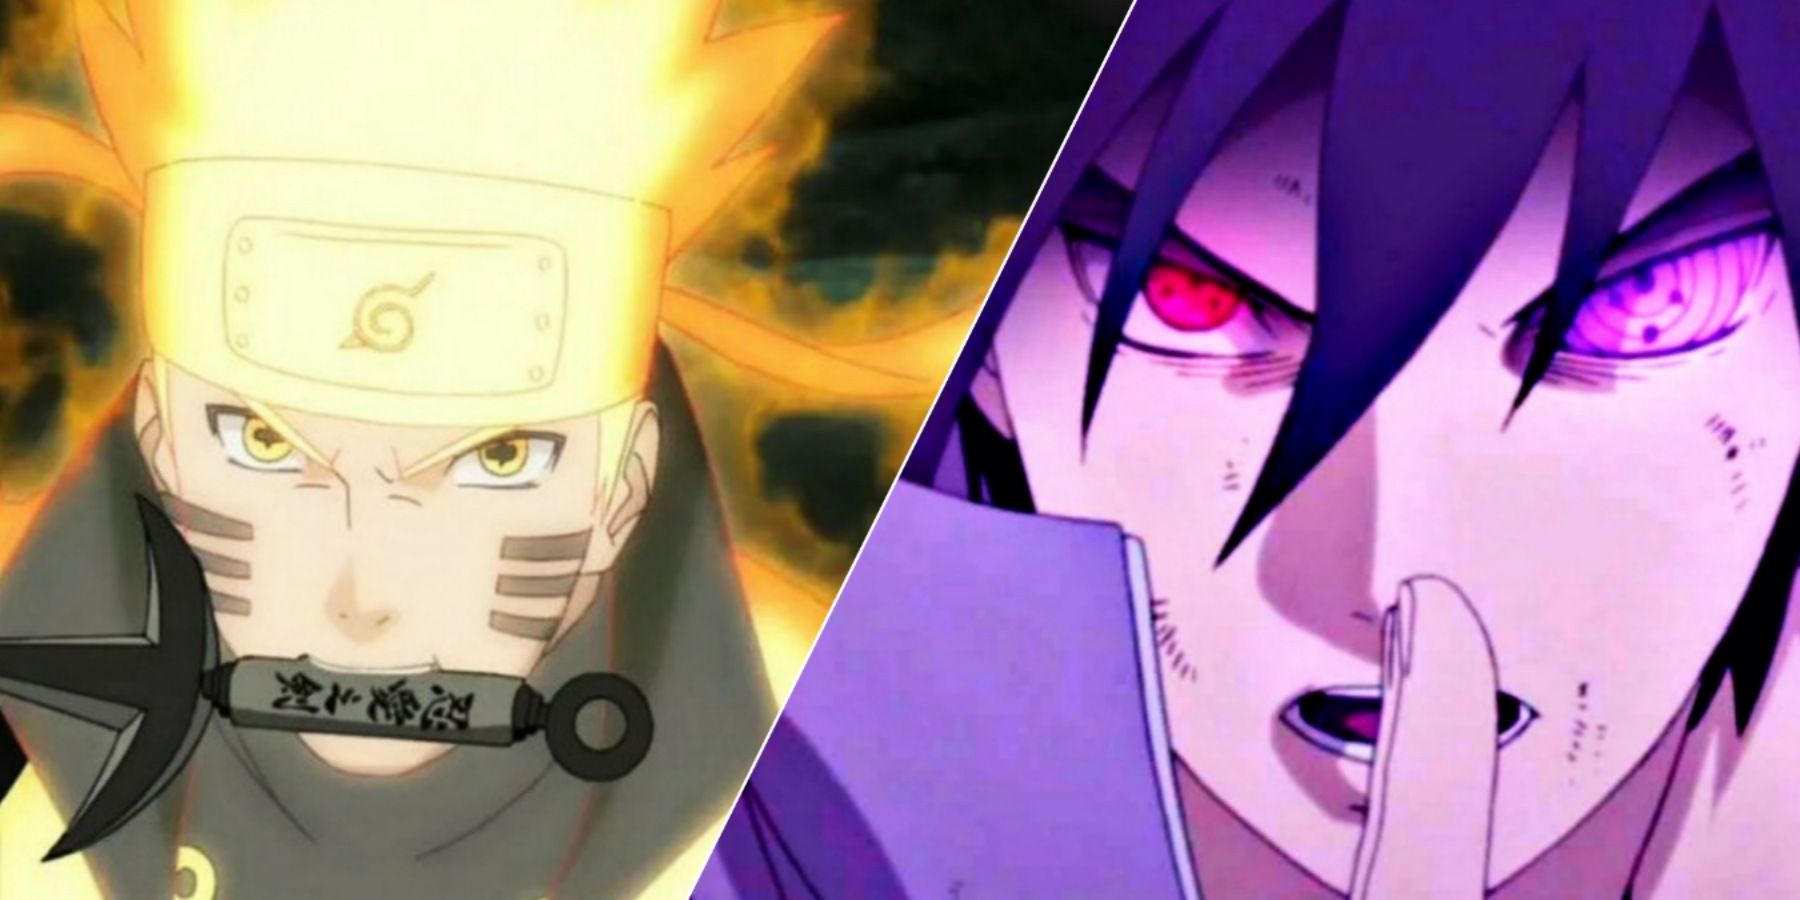 Times Naruto udowodnił, że był silniejszy niż Sasuke